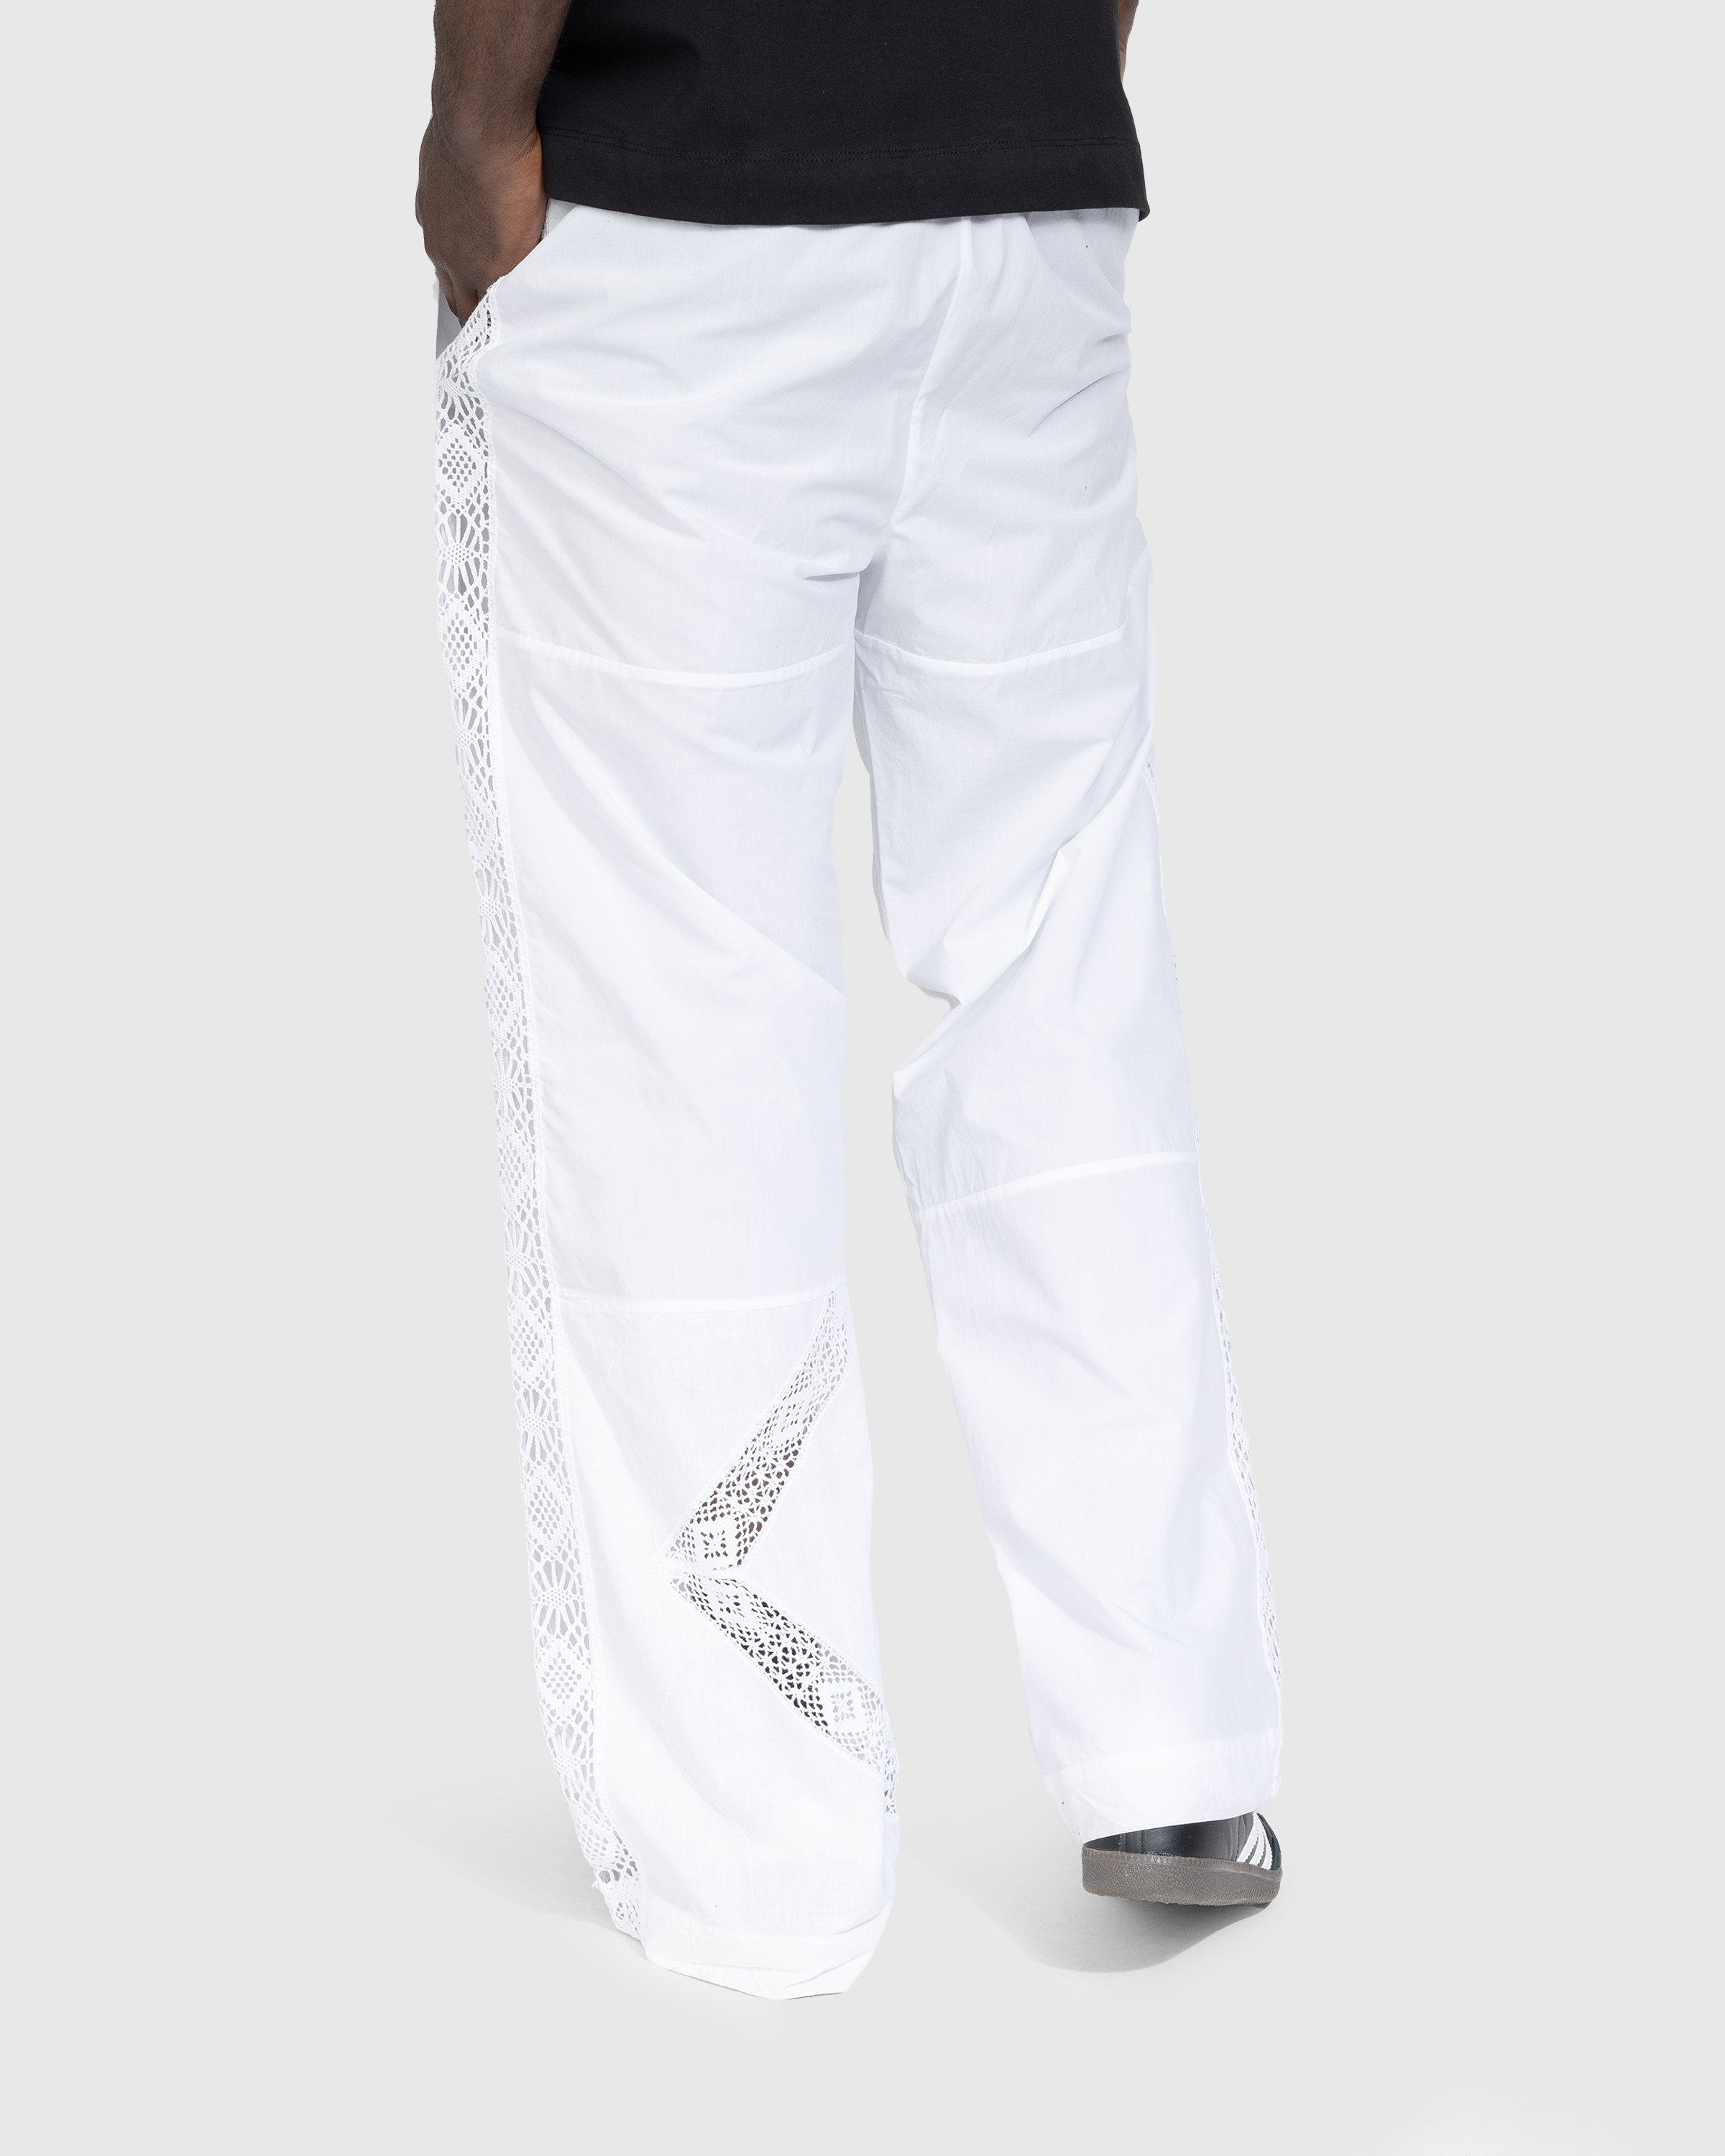 Marine Serre - Regenerated Household Linen Pajama Pants White - Clothing - White - Image 3